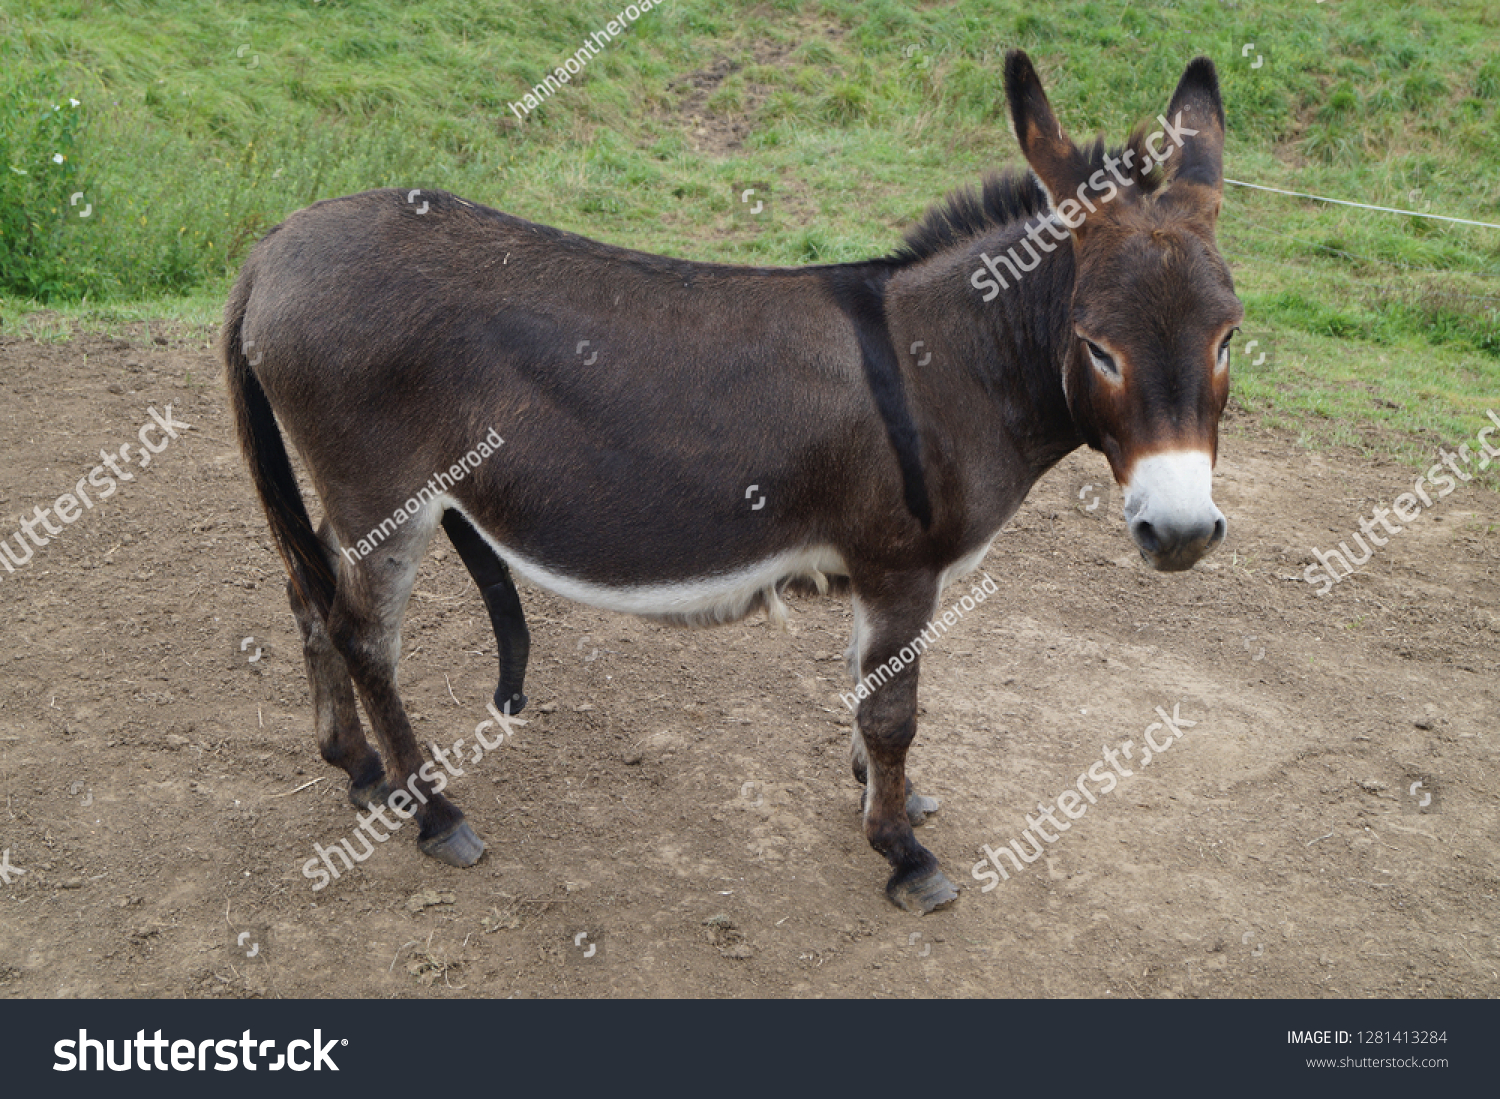 Стоковая фотография 1281413284: Donkey Big Penis Shutterstock.